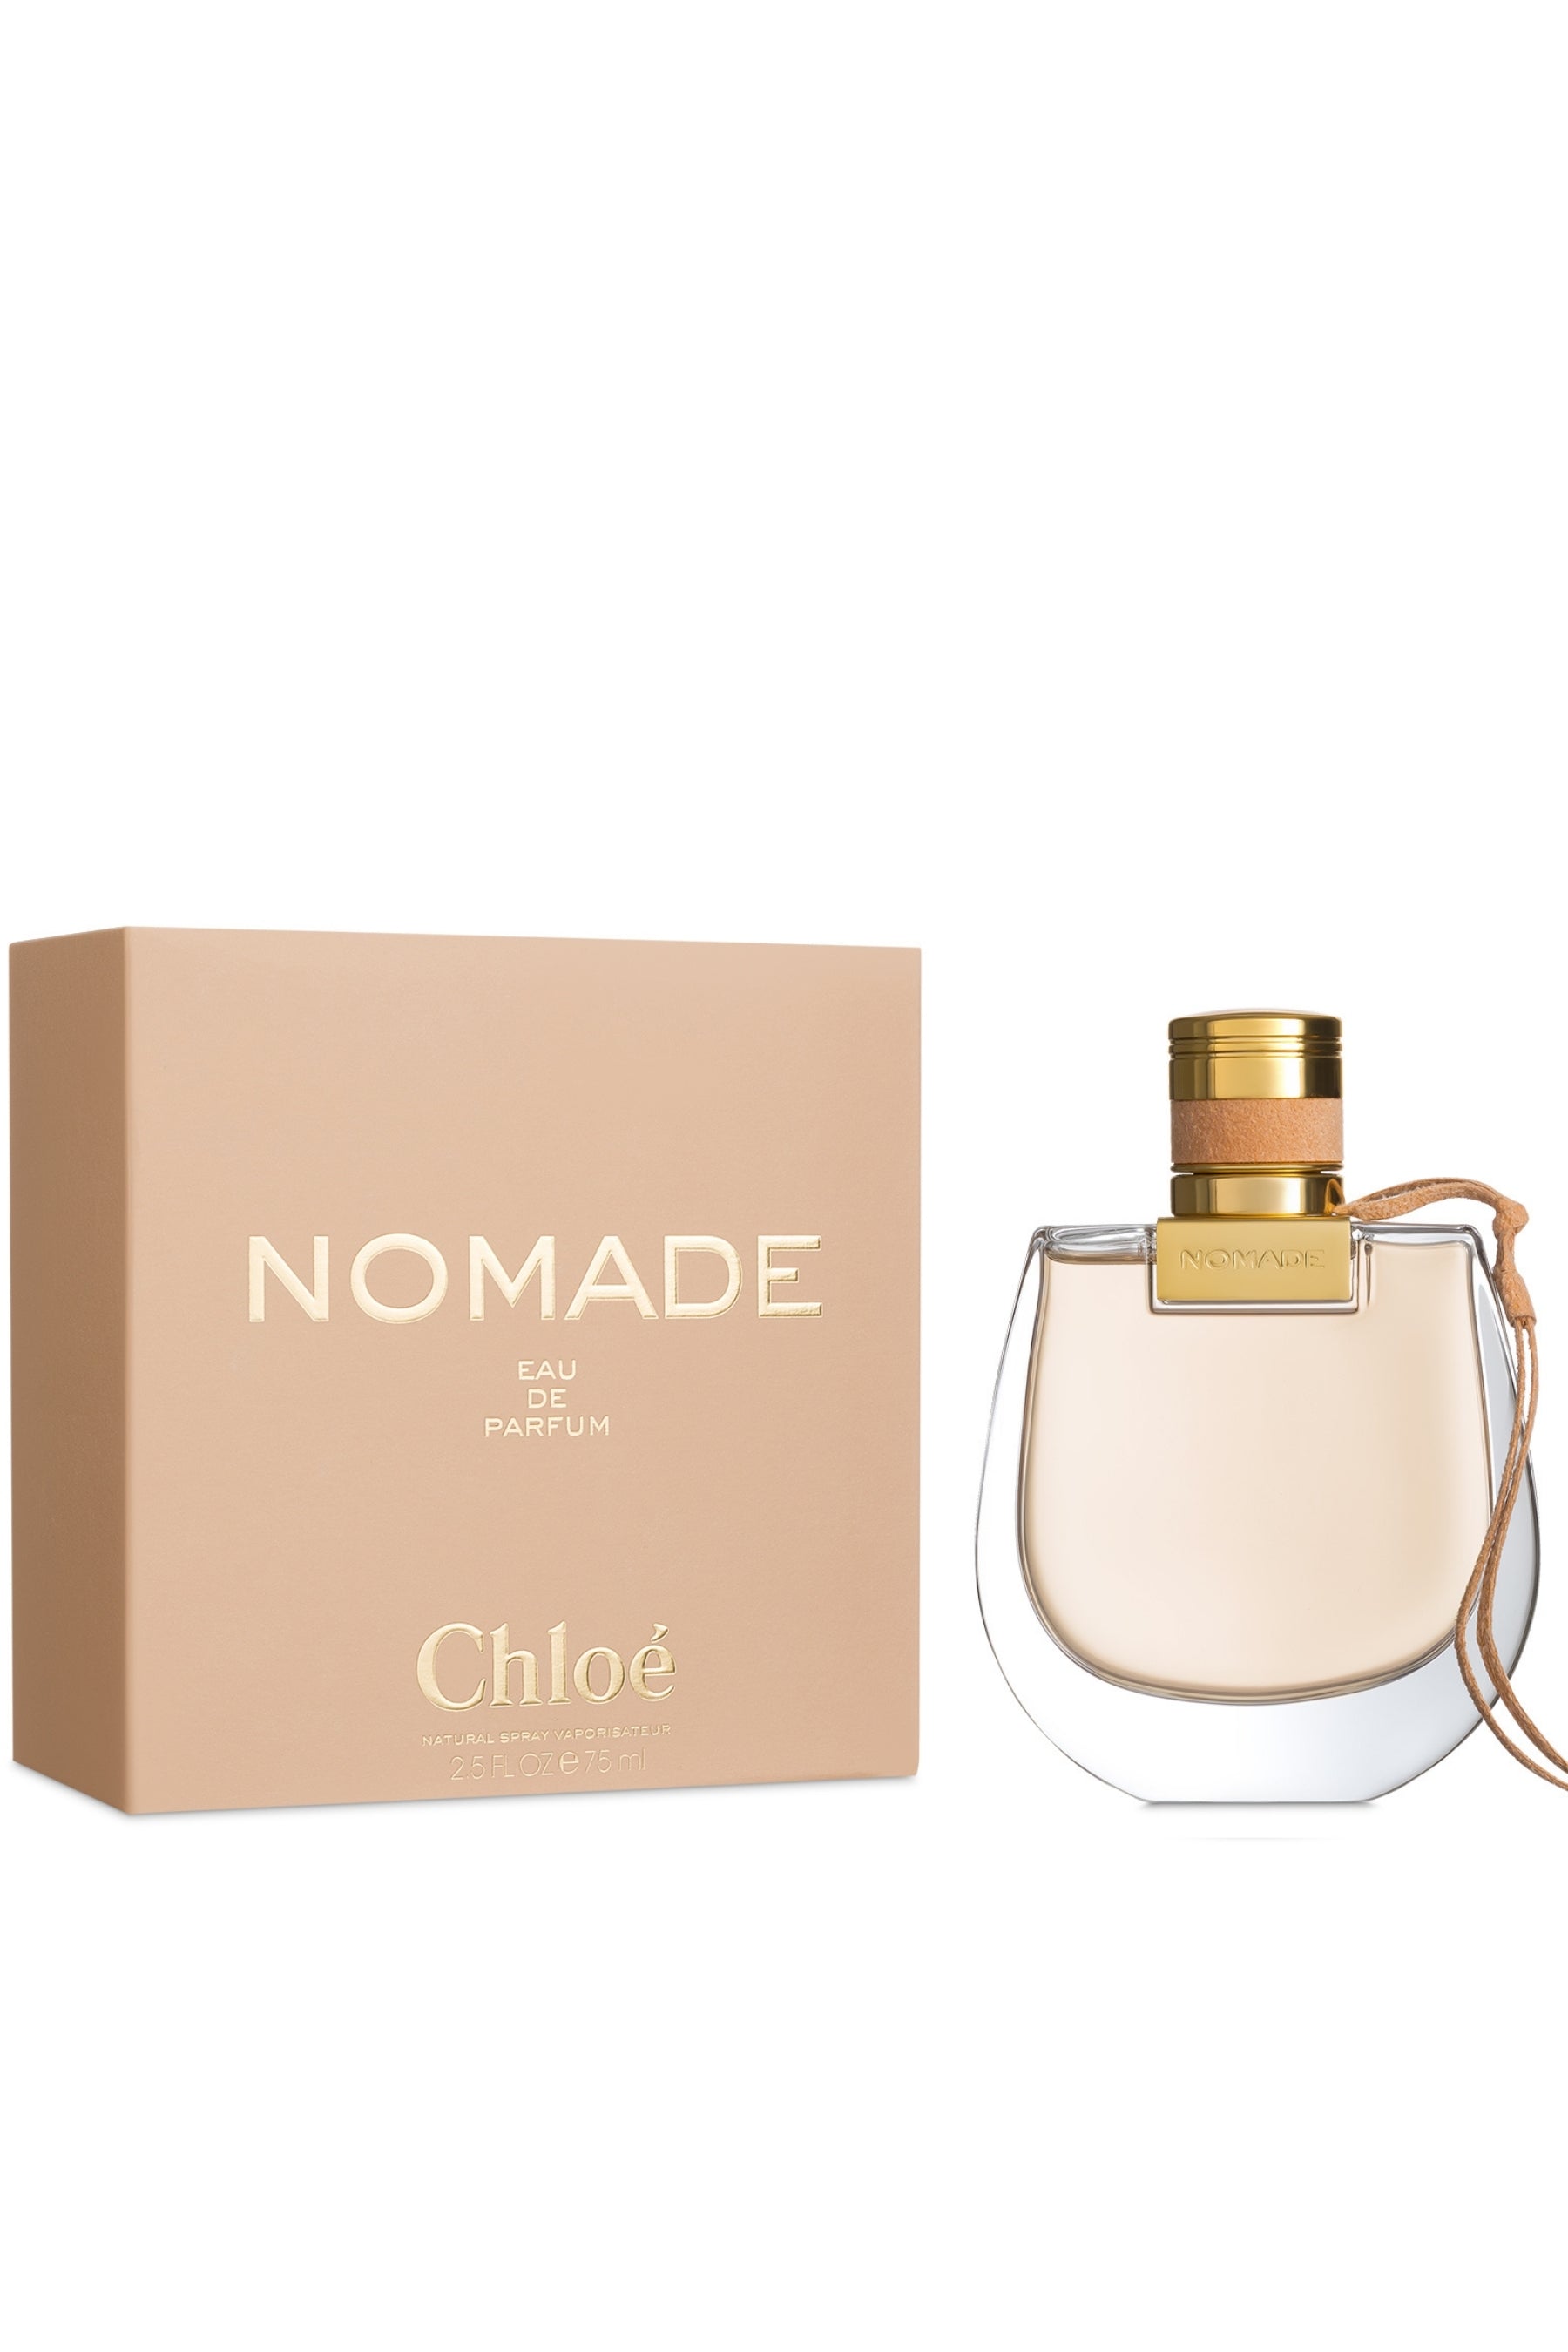 Chloé Nomade - Eau de Parfum